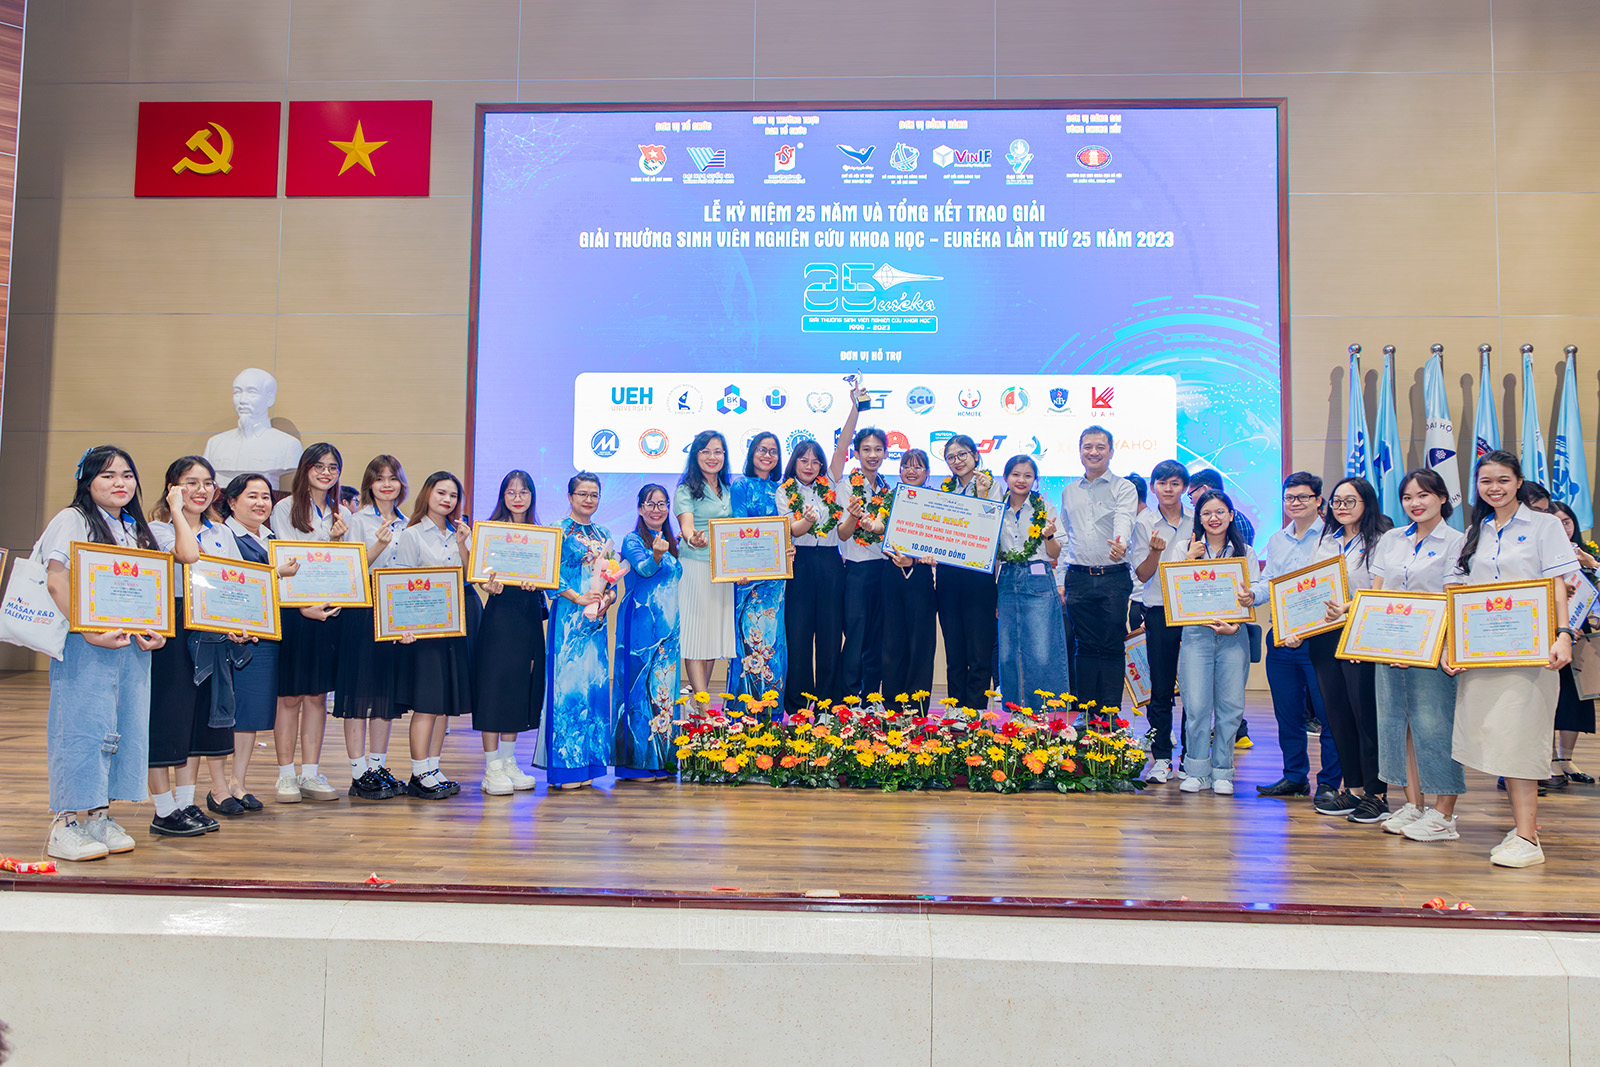 Sinh viên ĐH Công Thương TPHCM xuất sắc đạt giải Nhất Giải thưởng Sinh viên NCKH - Euréka lần thứ 25 năm 2023